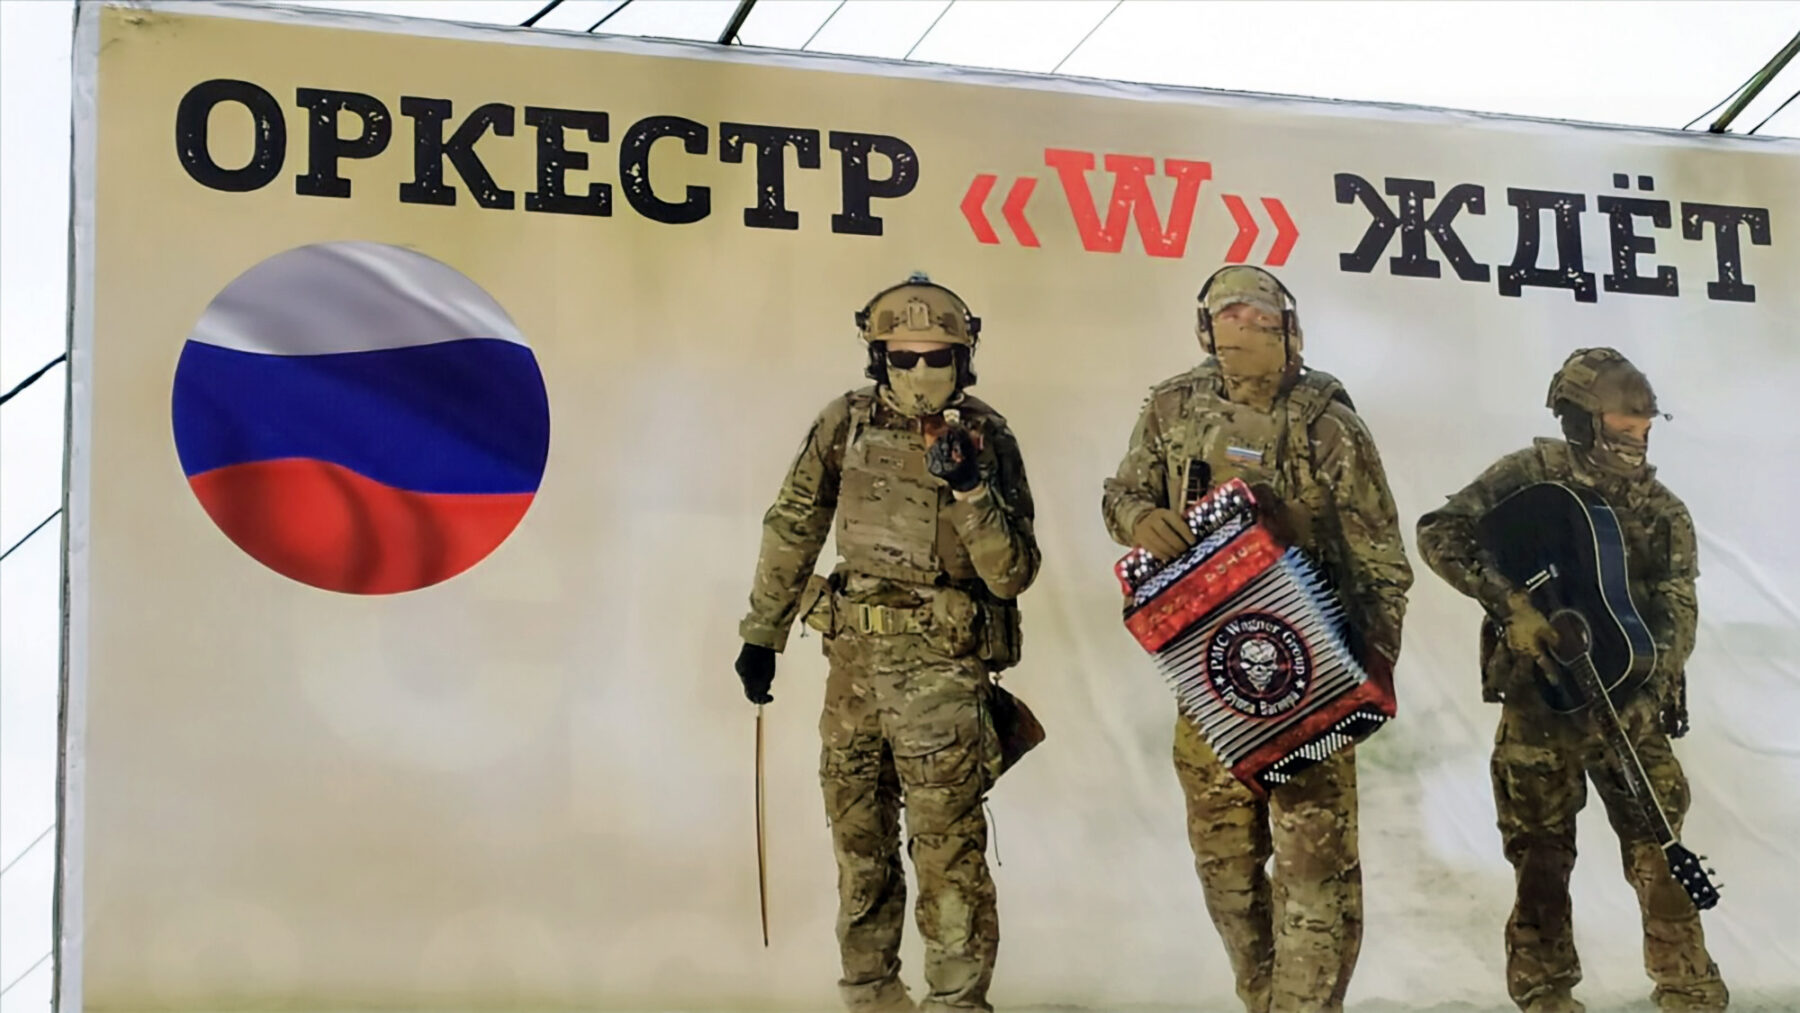 « L’orchestre W t’attend » : panneau d’affichage à Krasnodar // RFE/RL